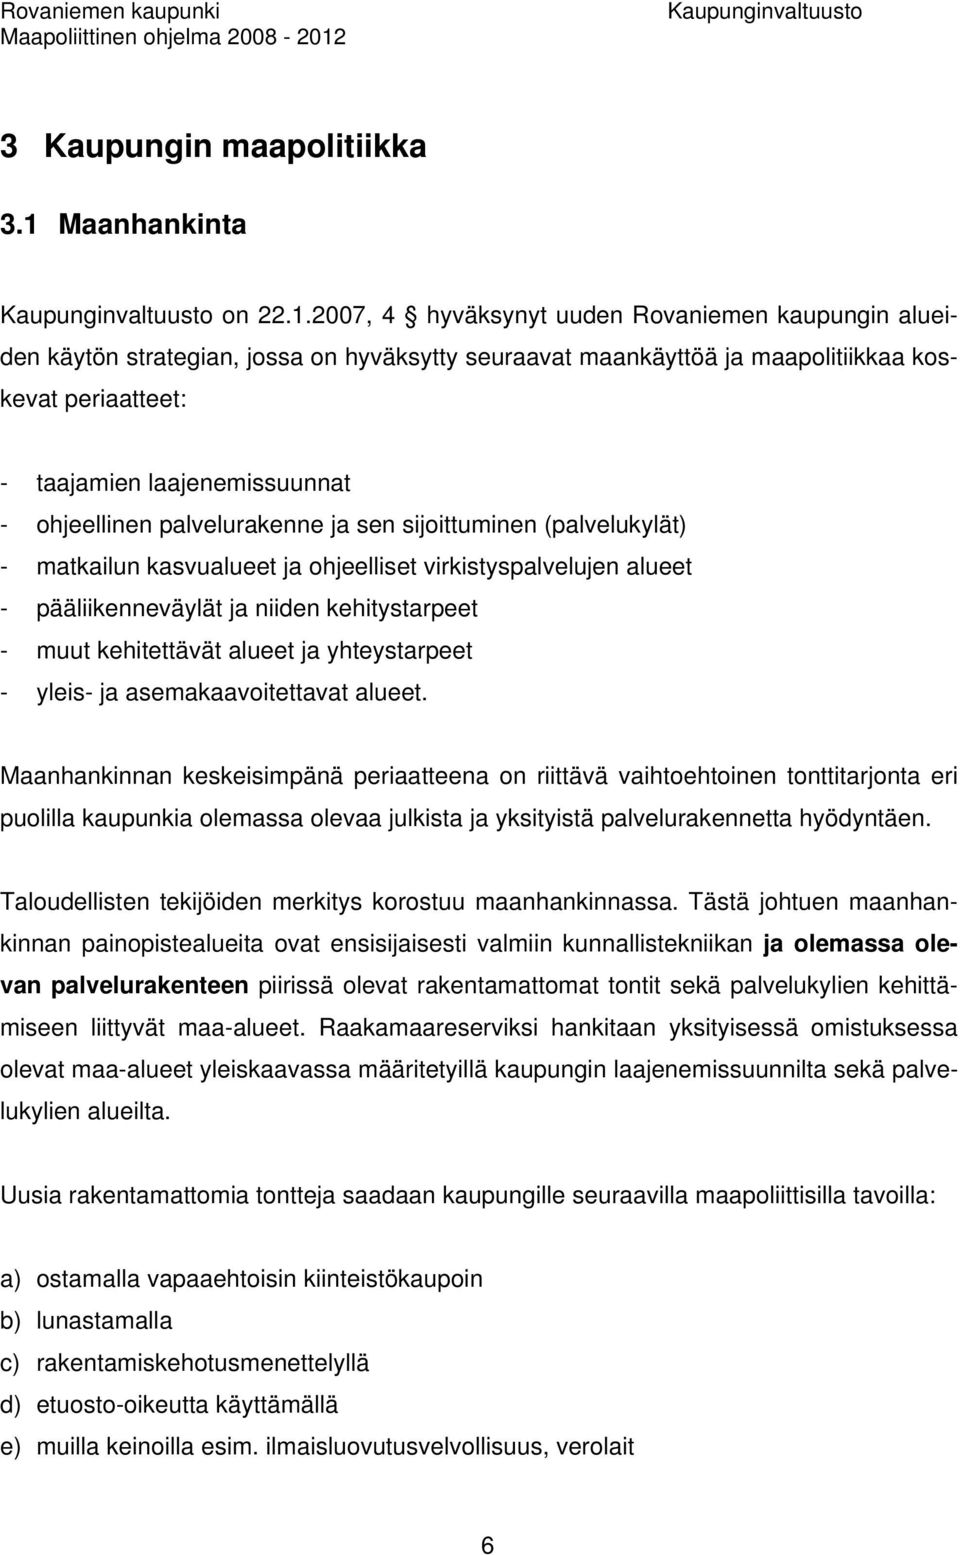 2007, 4 hyväksynyt uuden Rovaniemen kaupungin alueiden käytön strategian, jossa on hyväksytty seuraavat maankäyttöä ja maapolitiikkaa koskevat periaatteet: - taajamien laajenemissuunnat - ohjeellinen